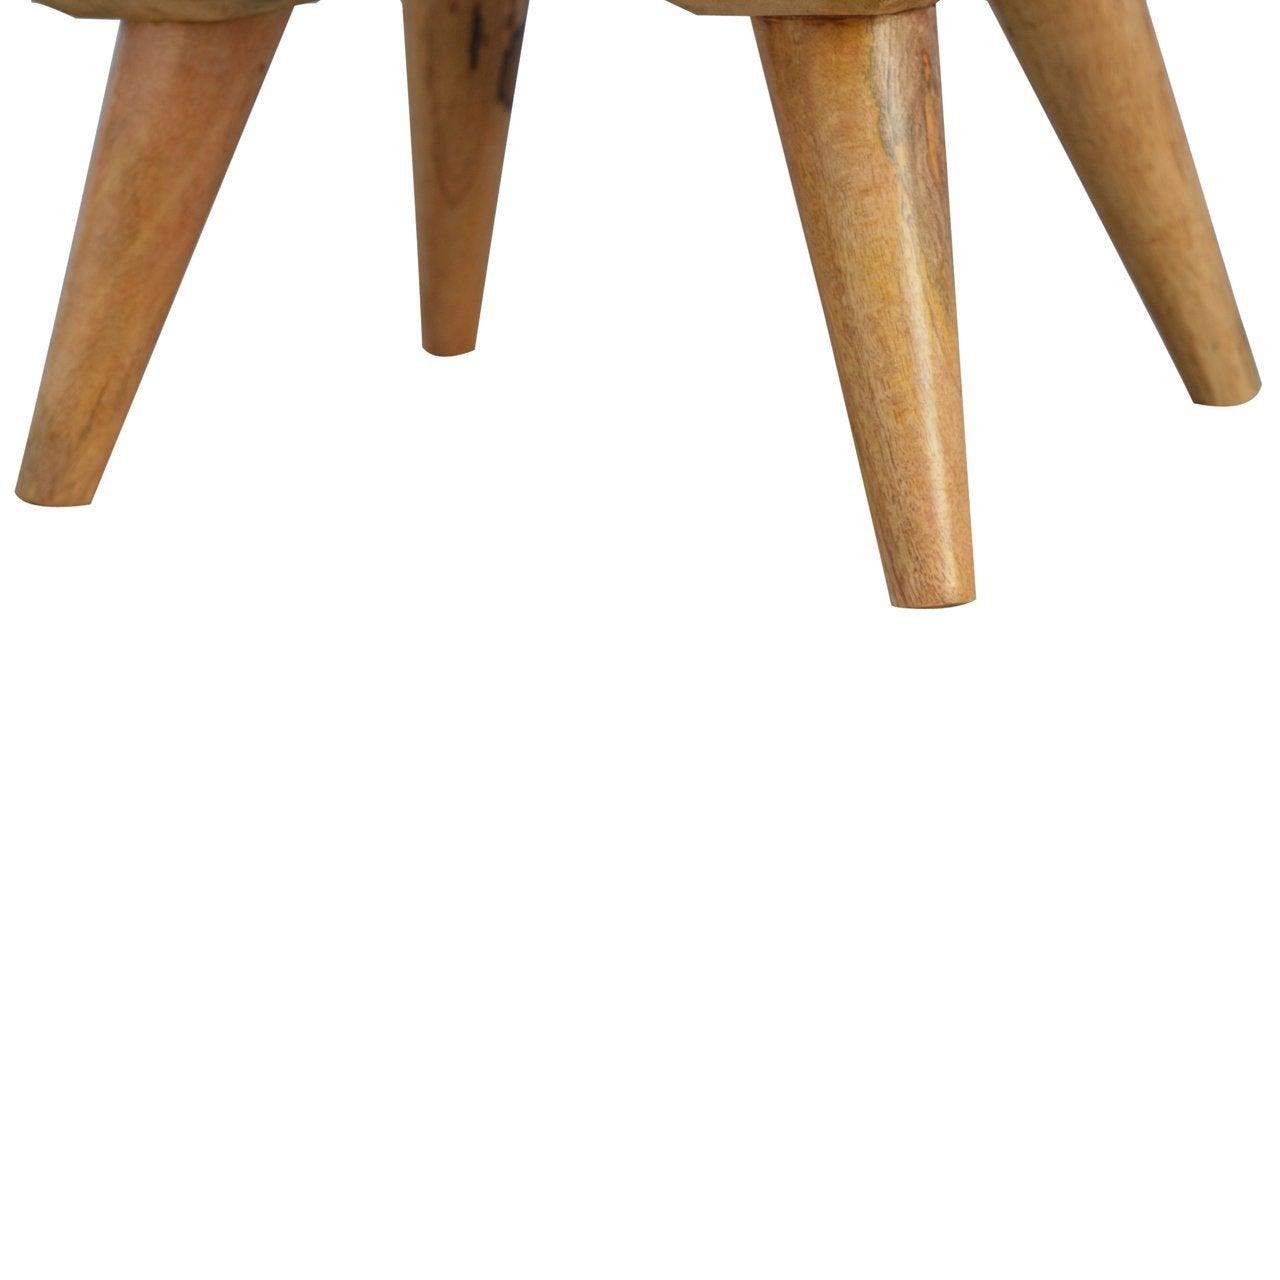 Nordic style 4 drawer multi bedside table - crimblefest furniture - image 8